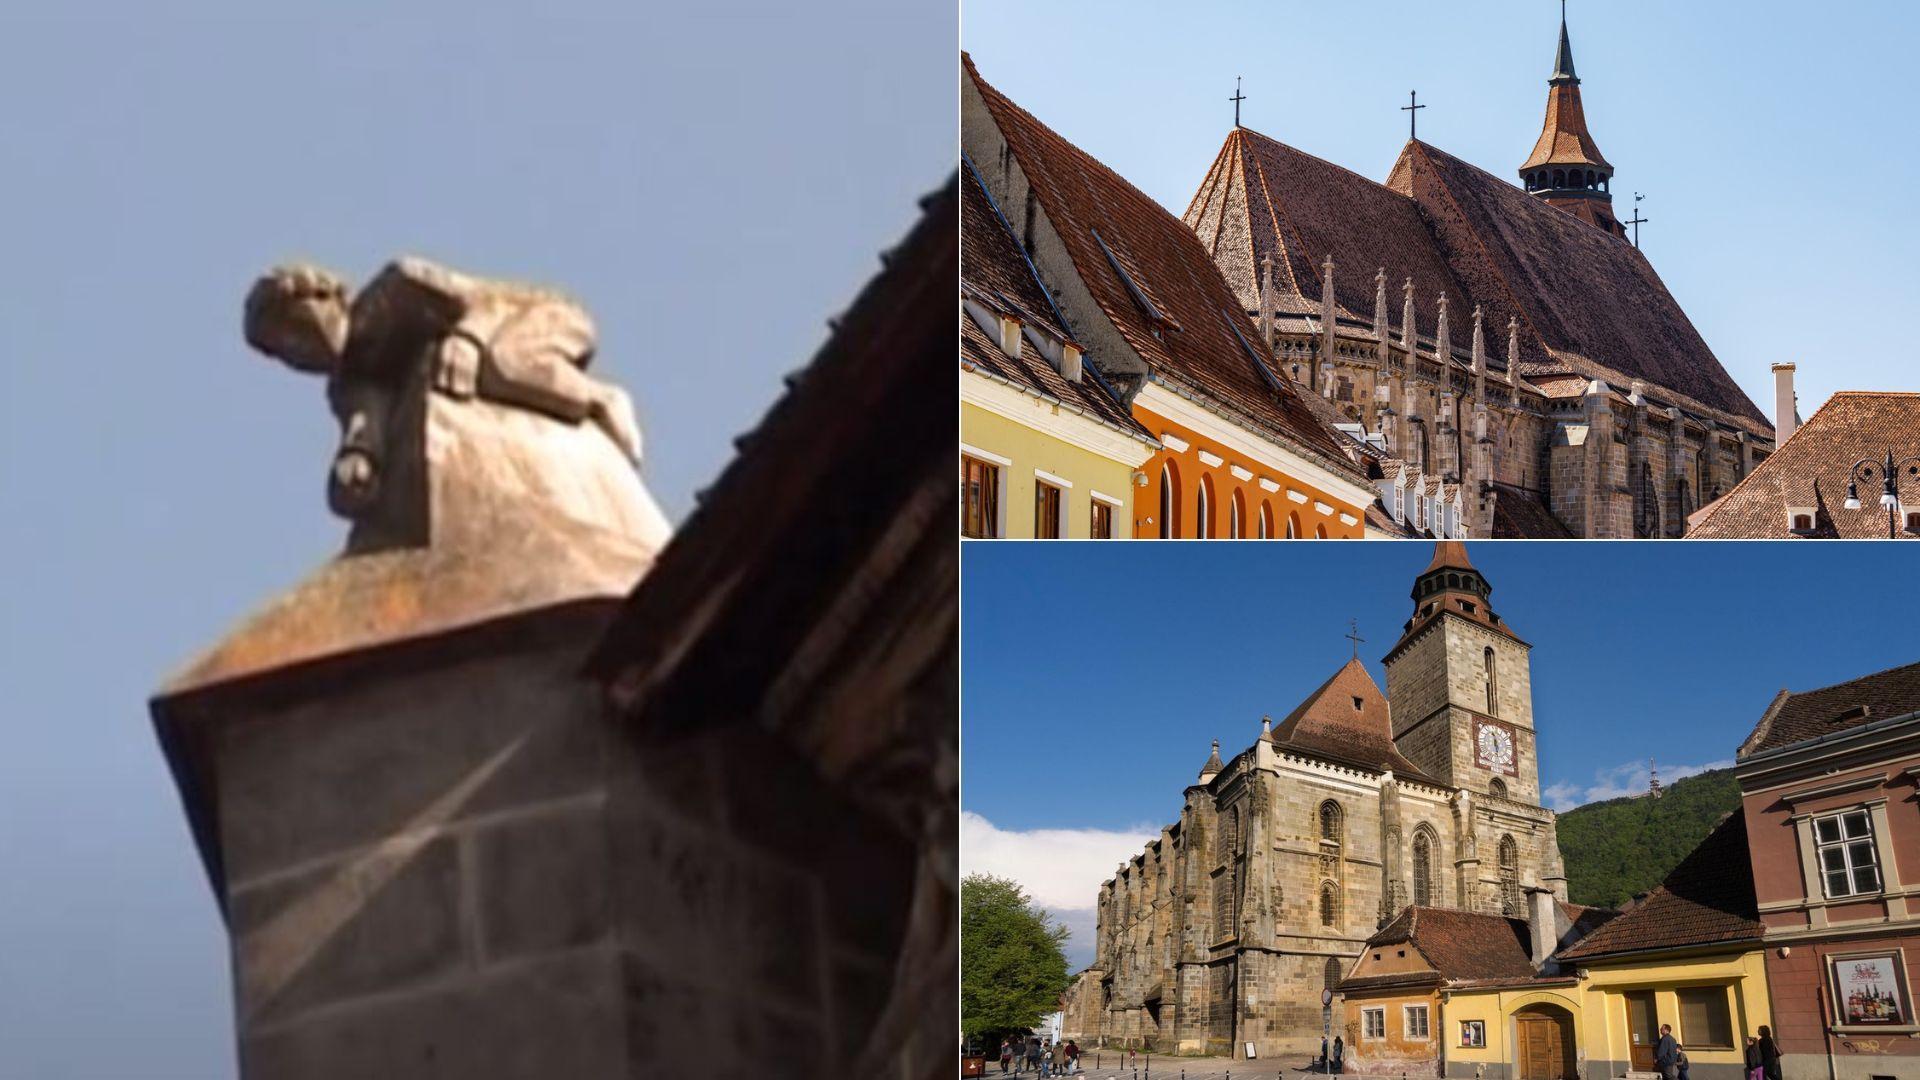 Detaliul despre Biserica Neagră din Brașov pe care nici brașovenii nu îl cunosc. De ce pe acoperiș exista statuia unui băiețel